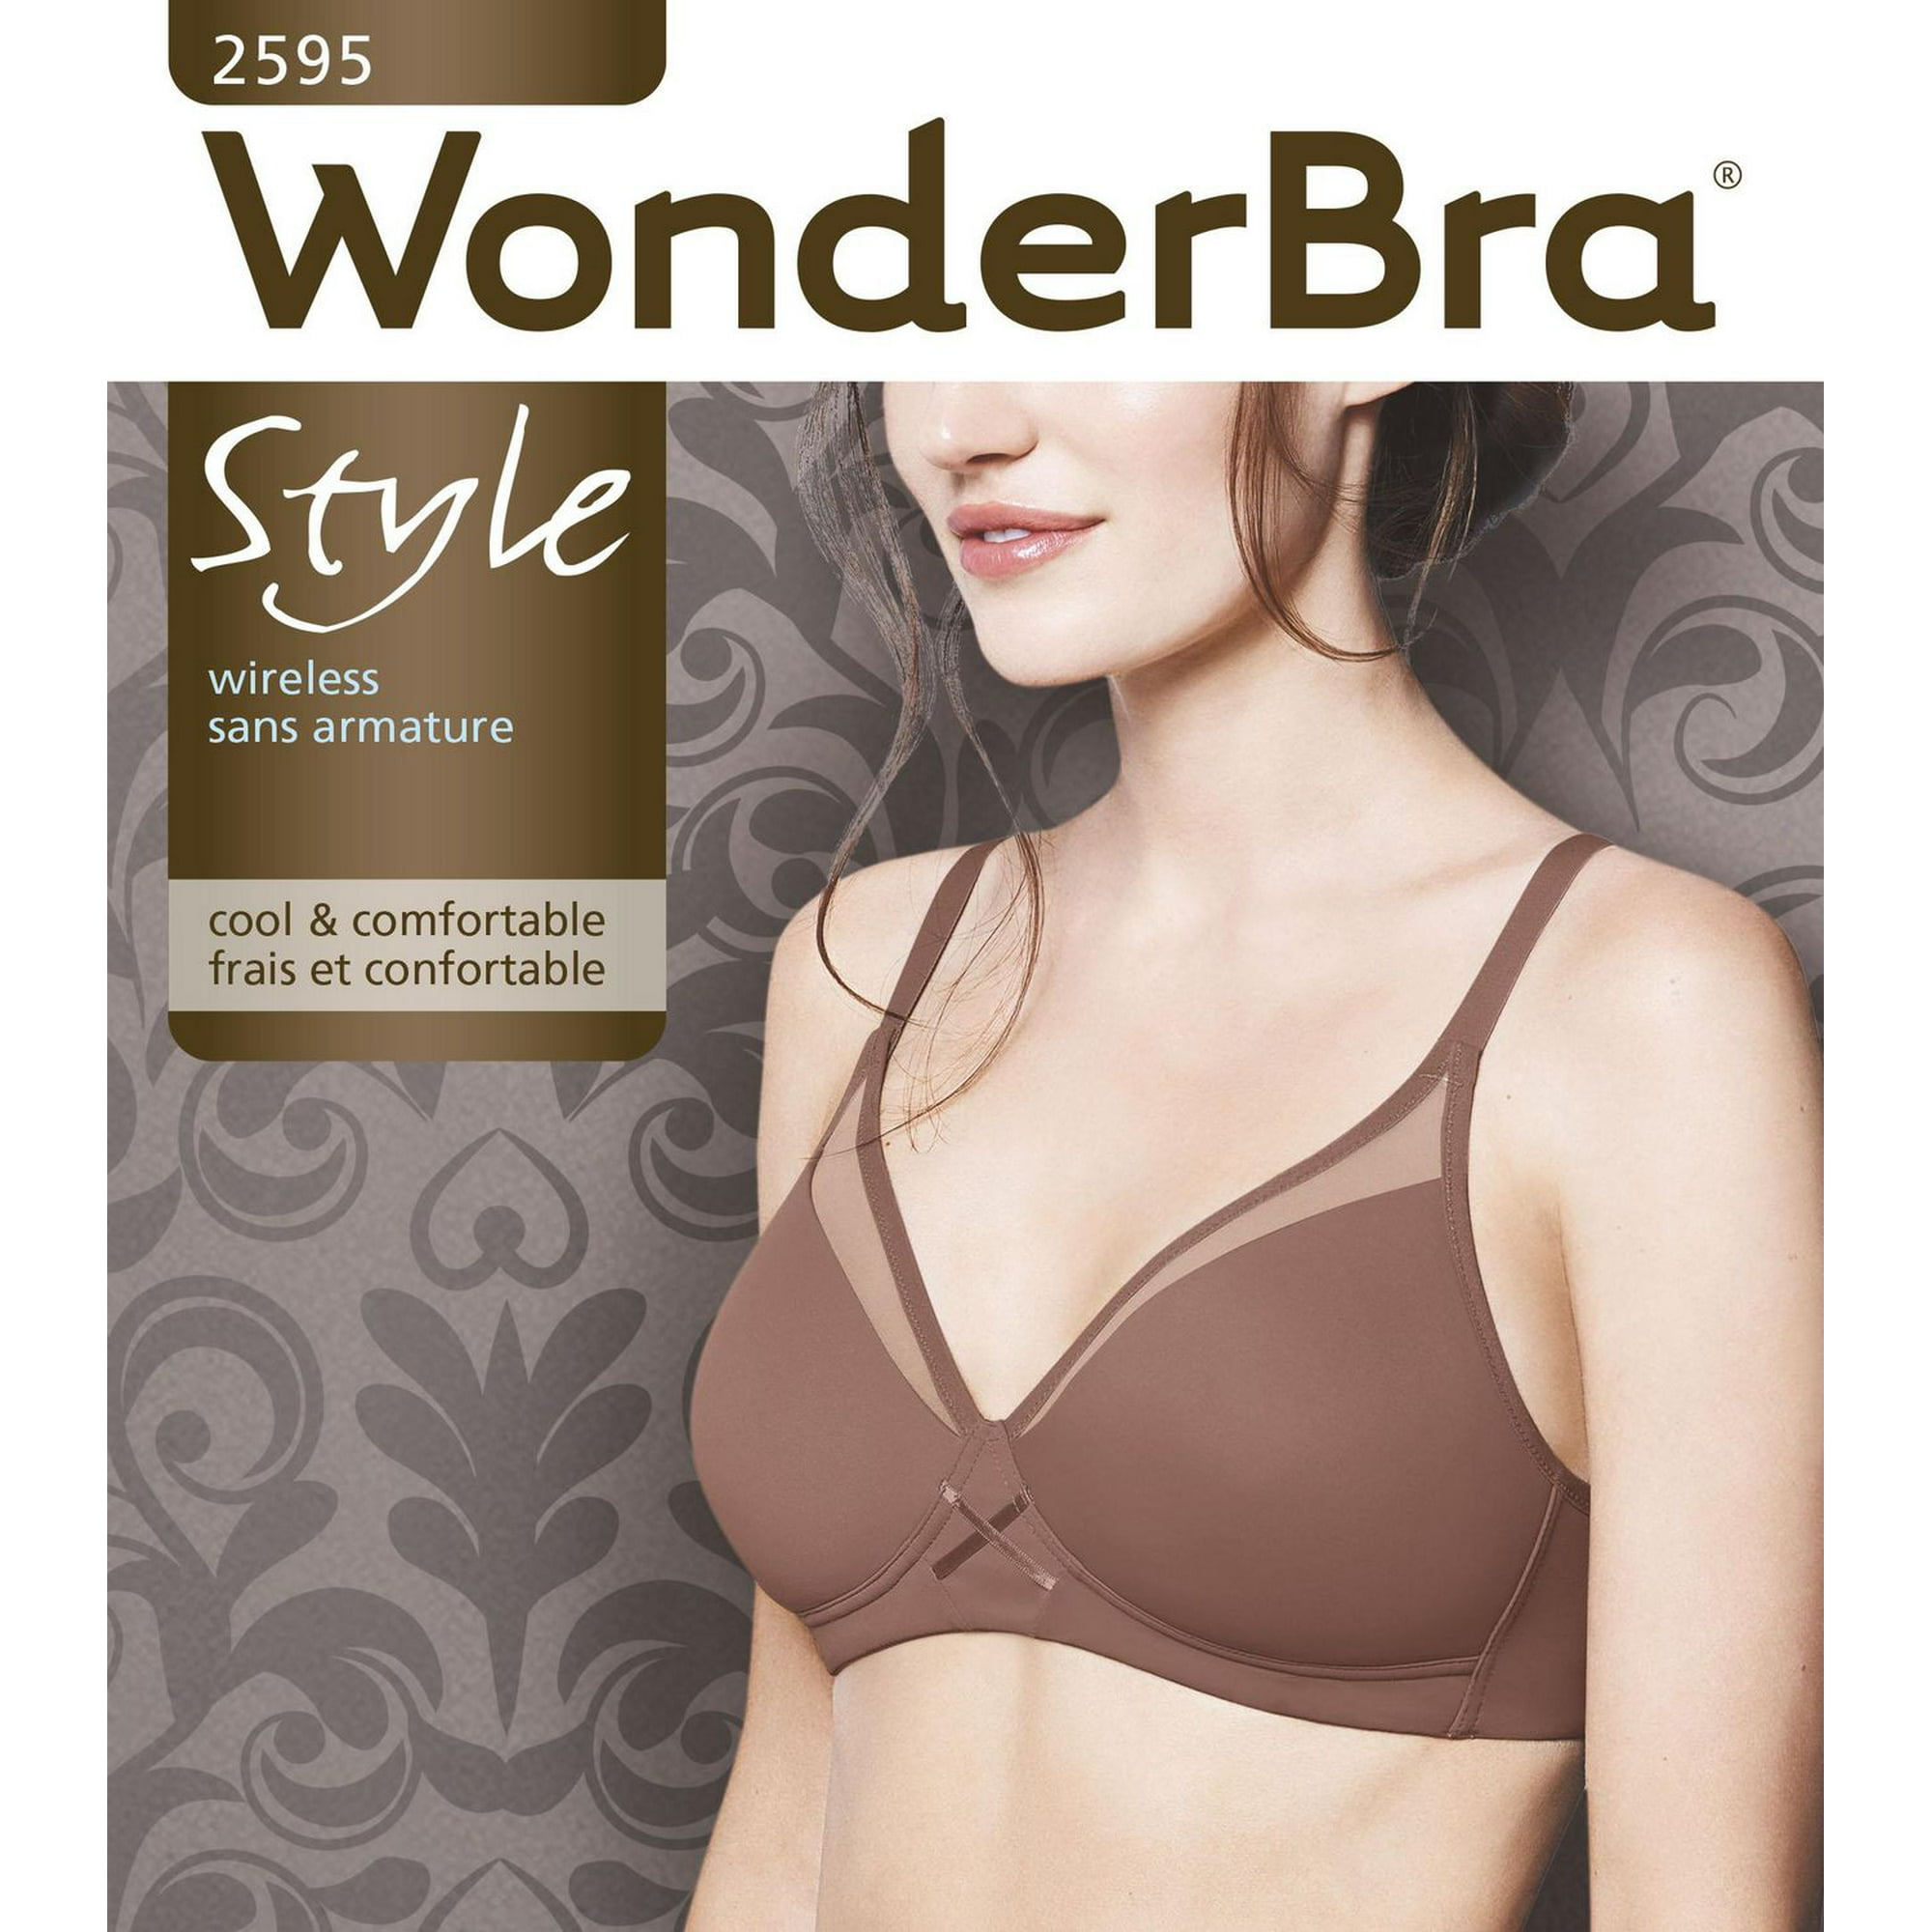 New WONDER BRA Underwear Large Waist Control 